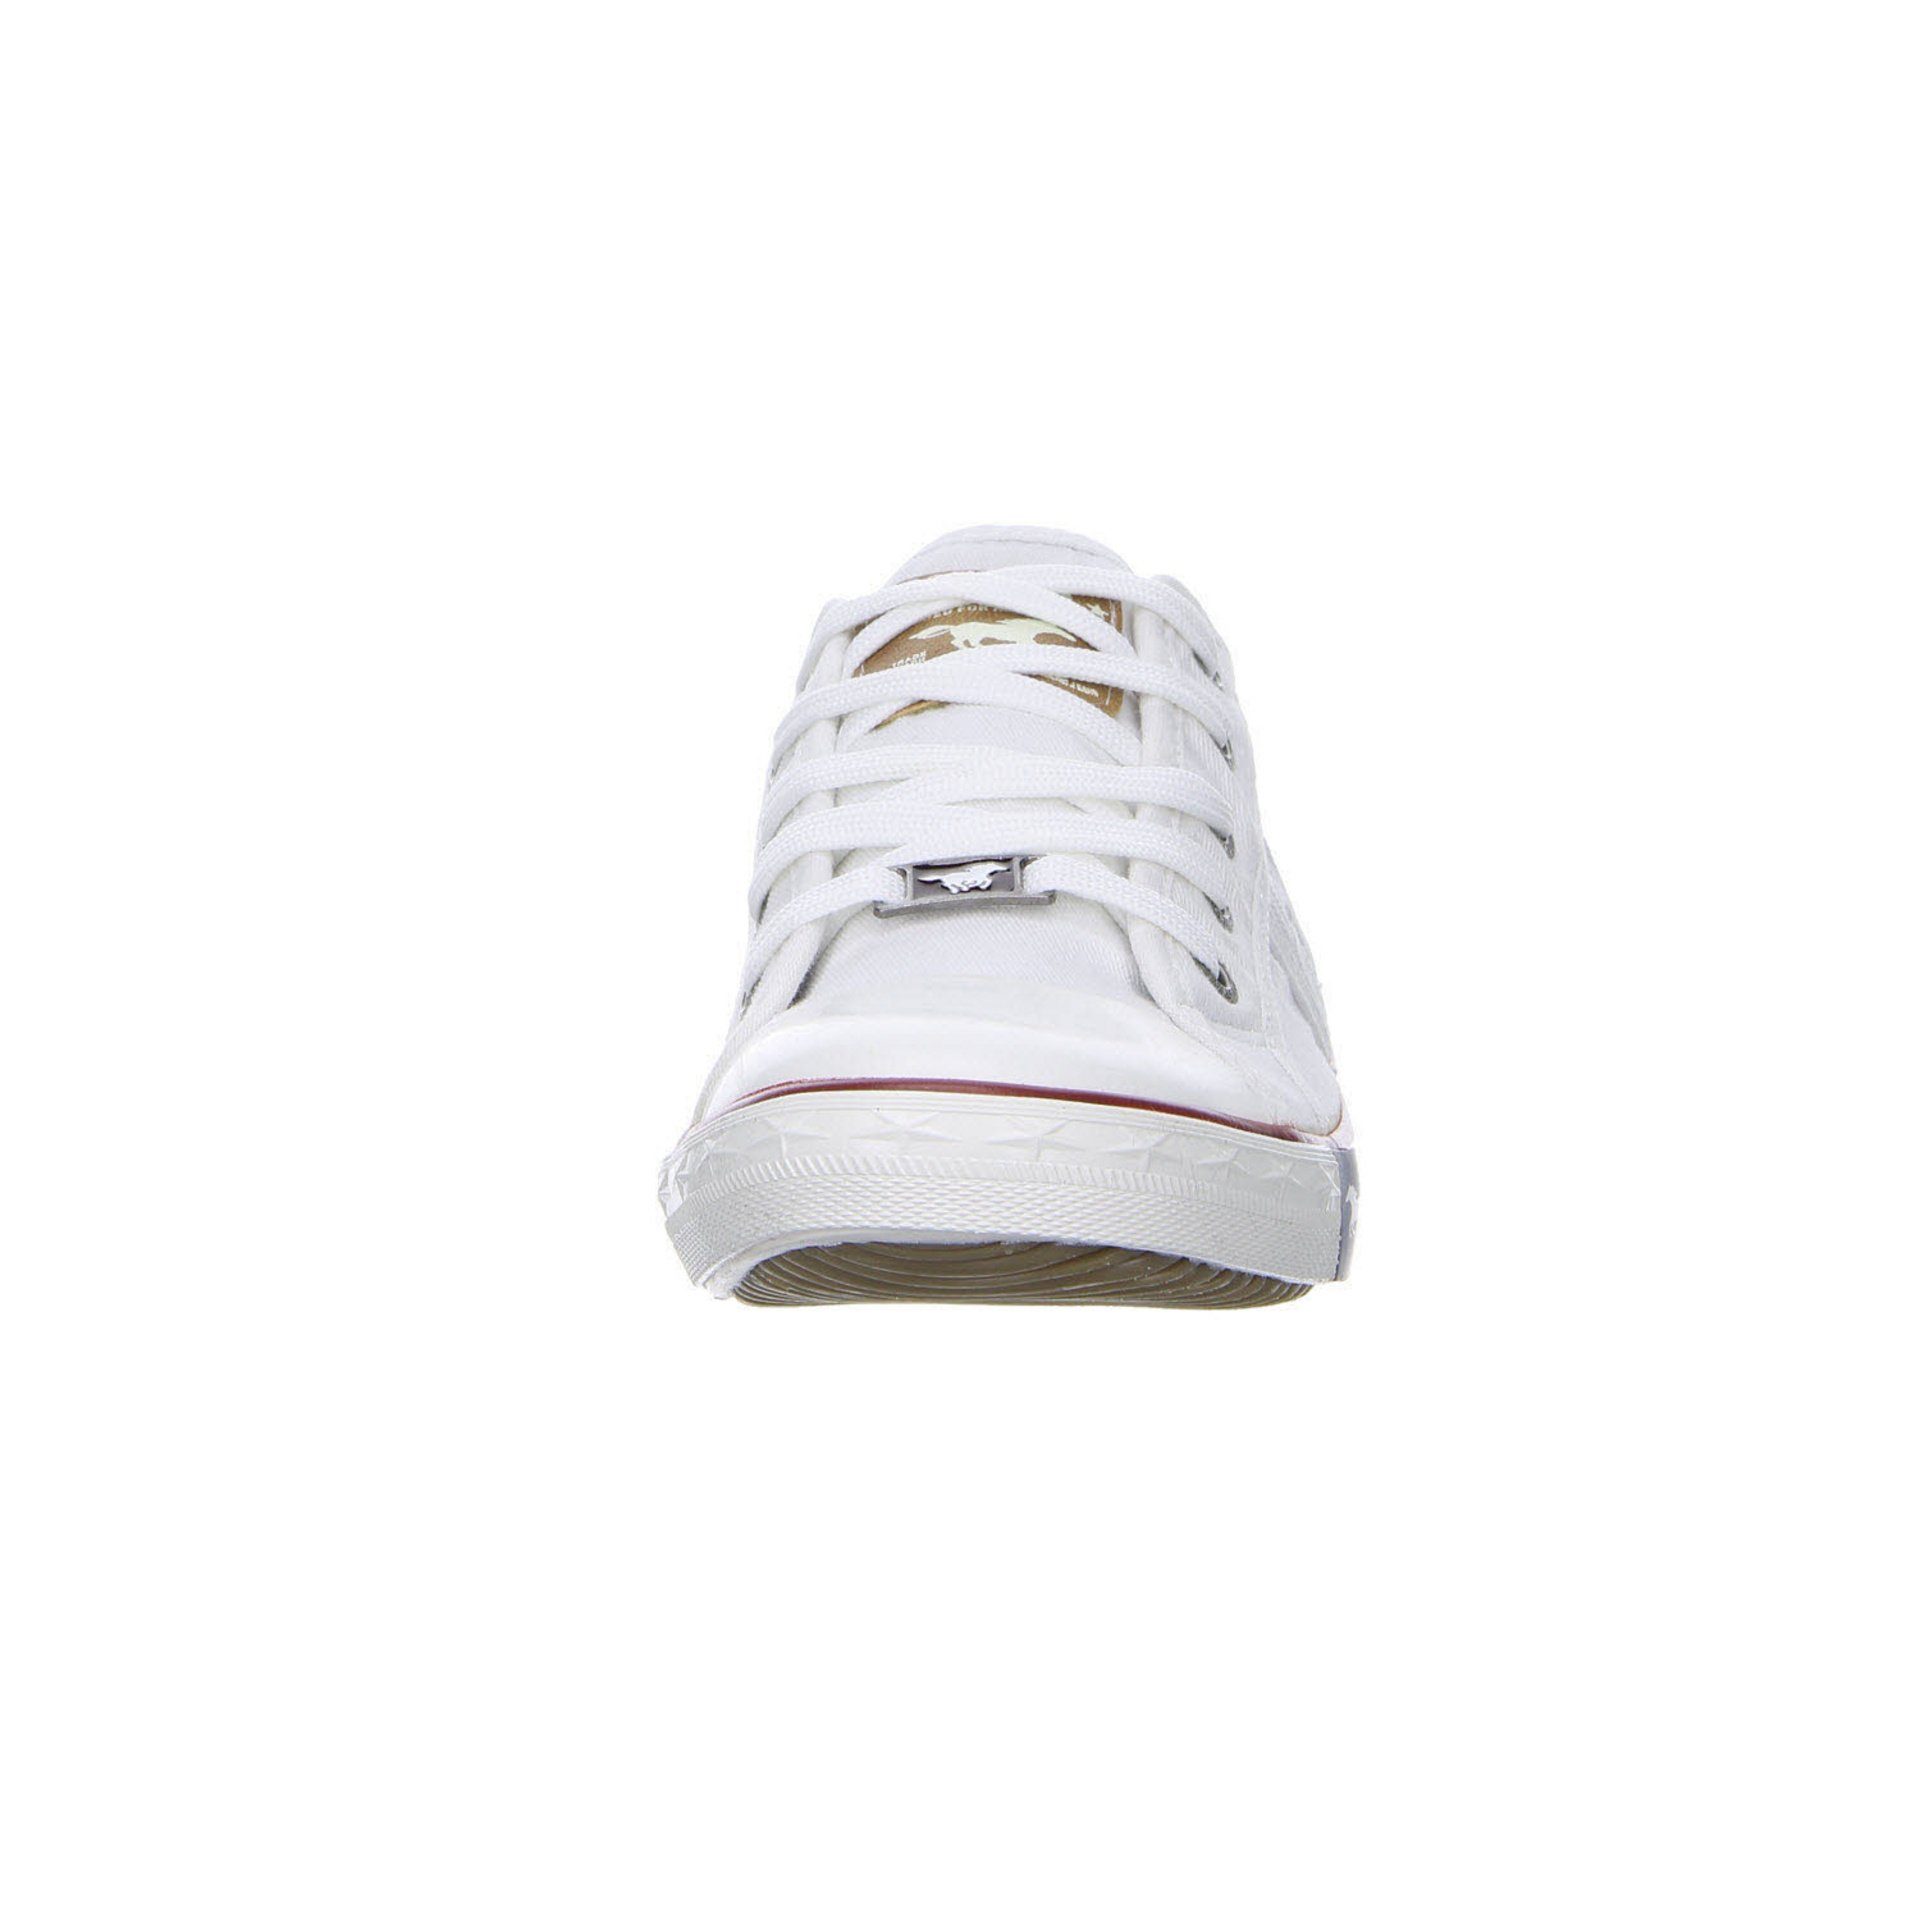 Sneaker weiß Damen Sneaker Shoes Synthetikkombination Halbschuhe Sport Mustang Schuhe Sneaker